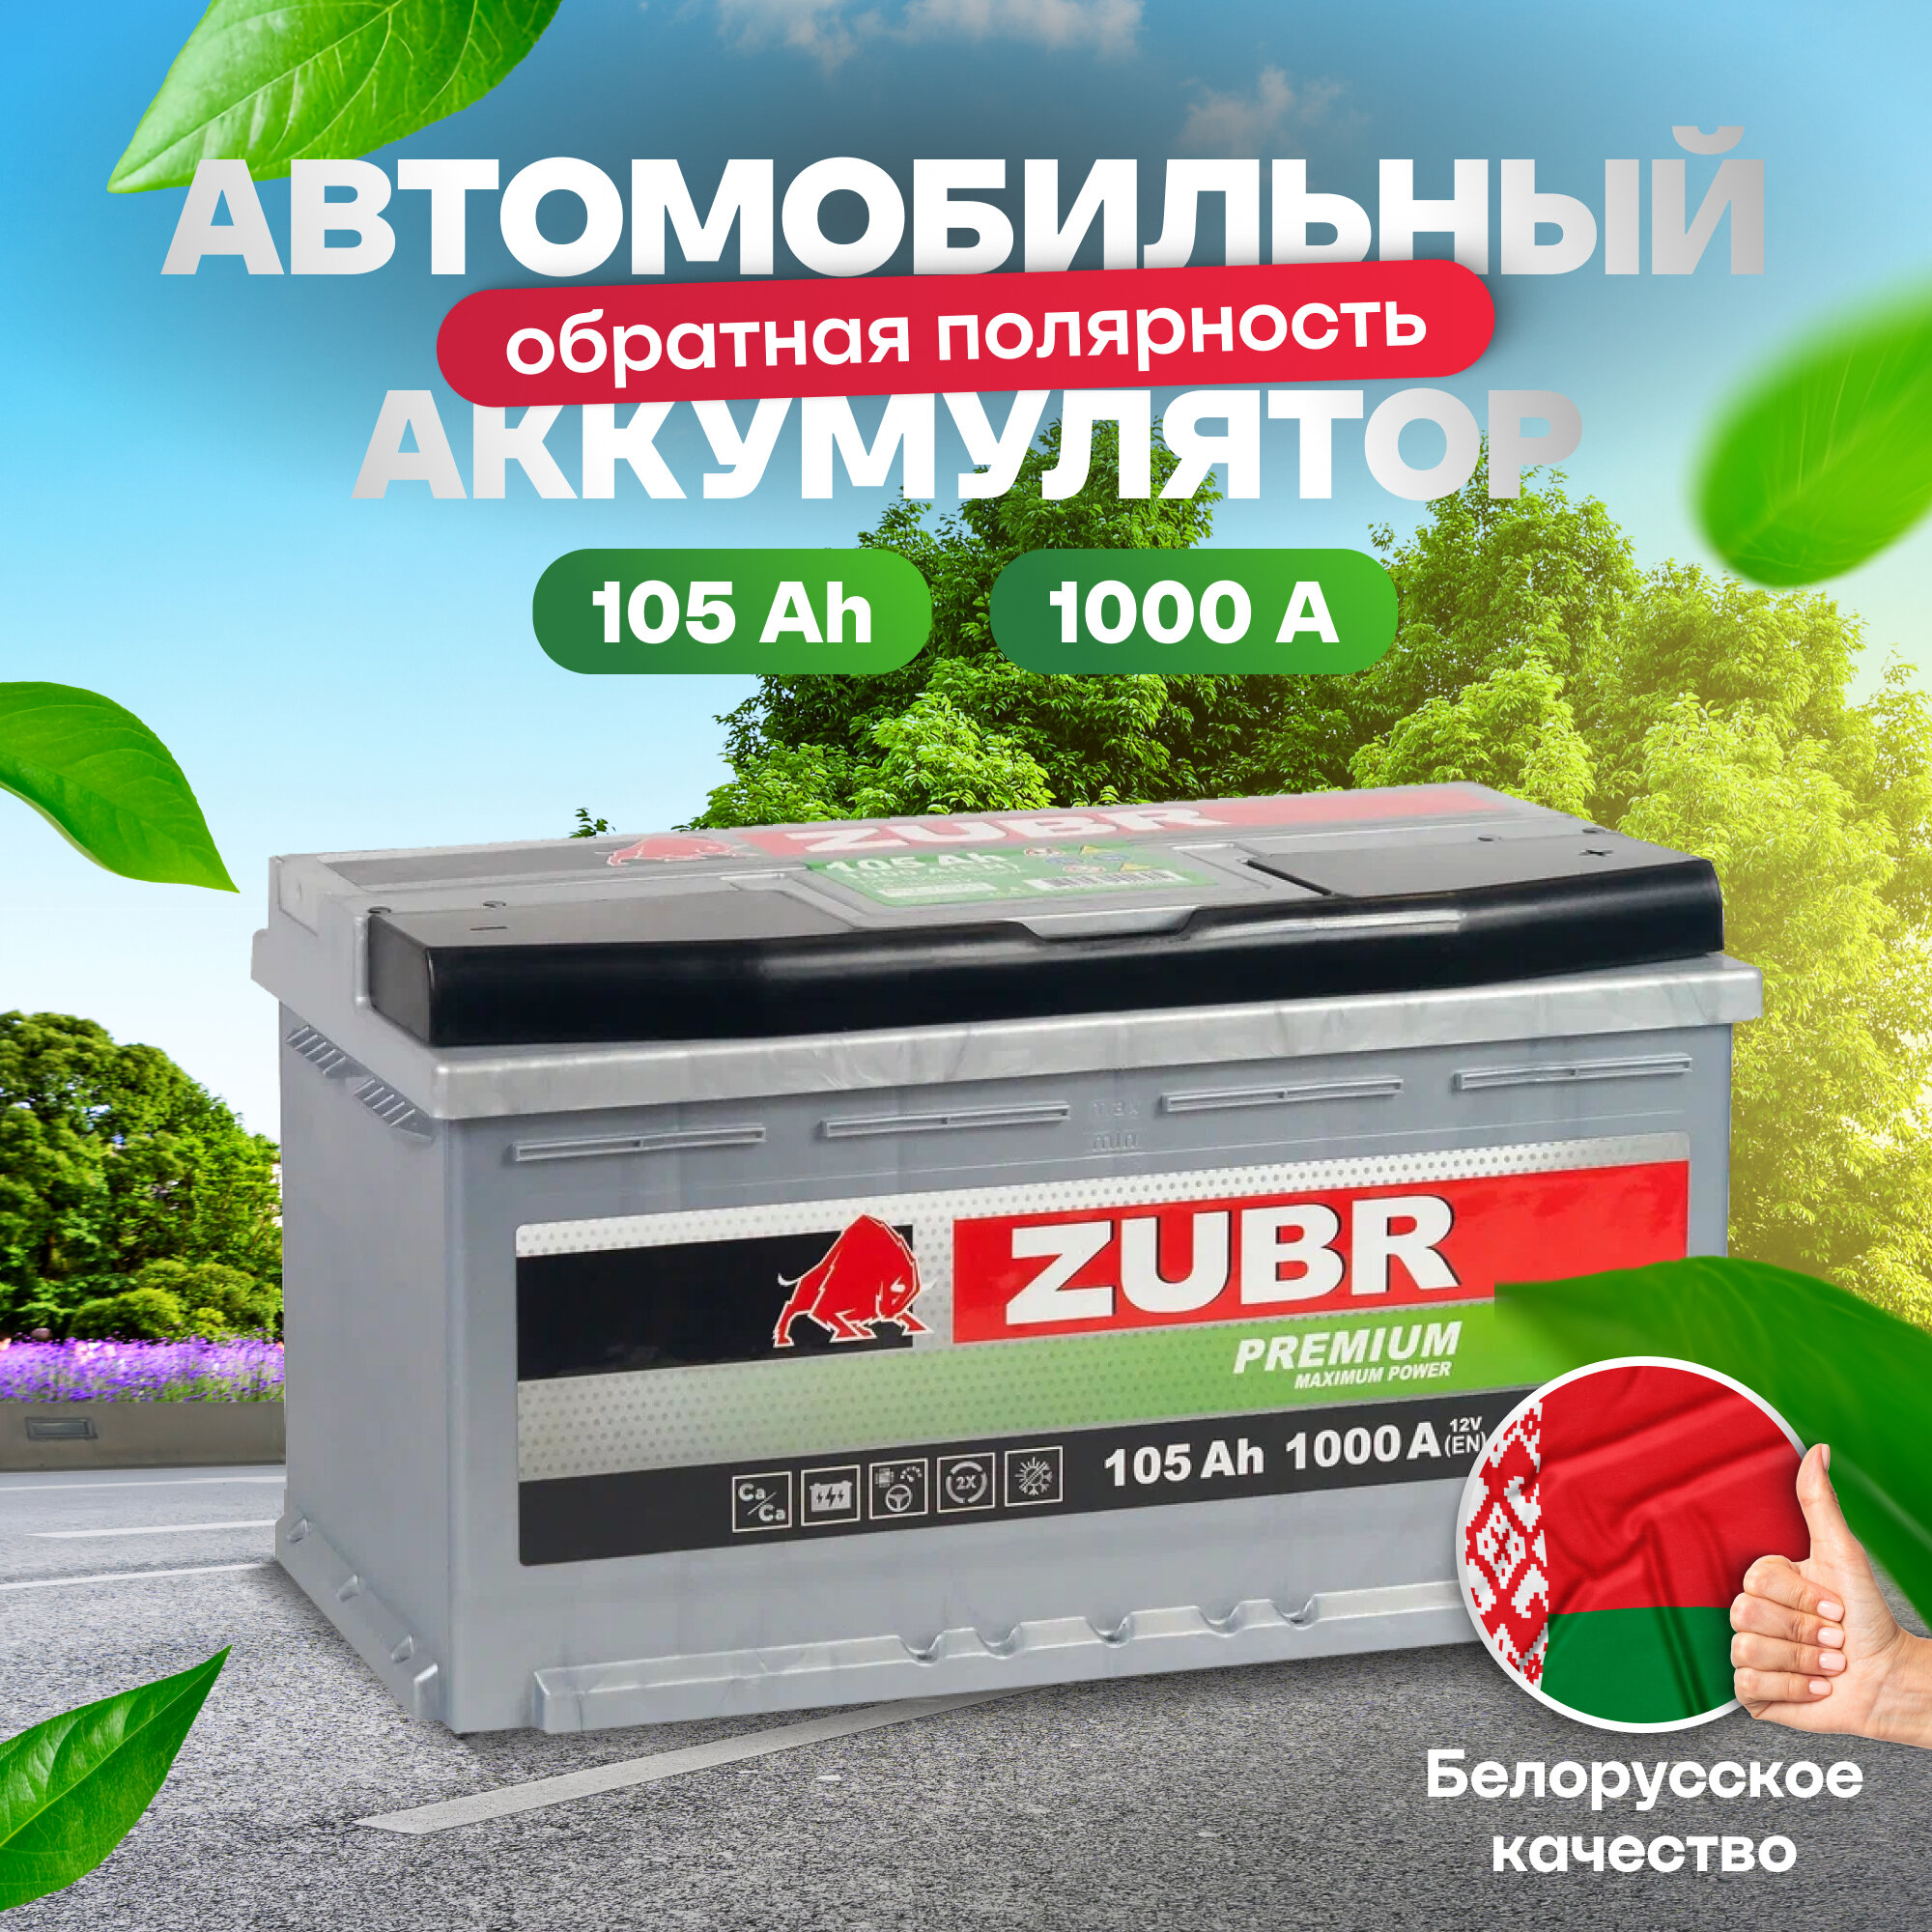 Аккумулятор автомобильный ZUBR Premium 105 Ah 1000 A обратная полярность 353x175x190